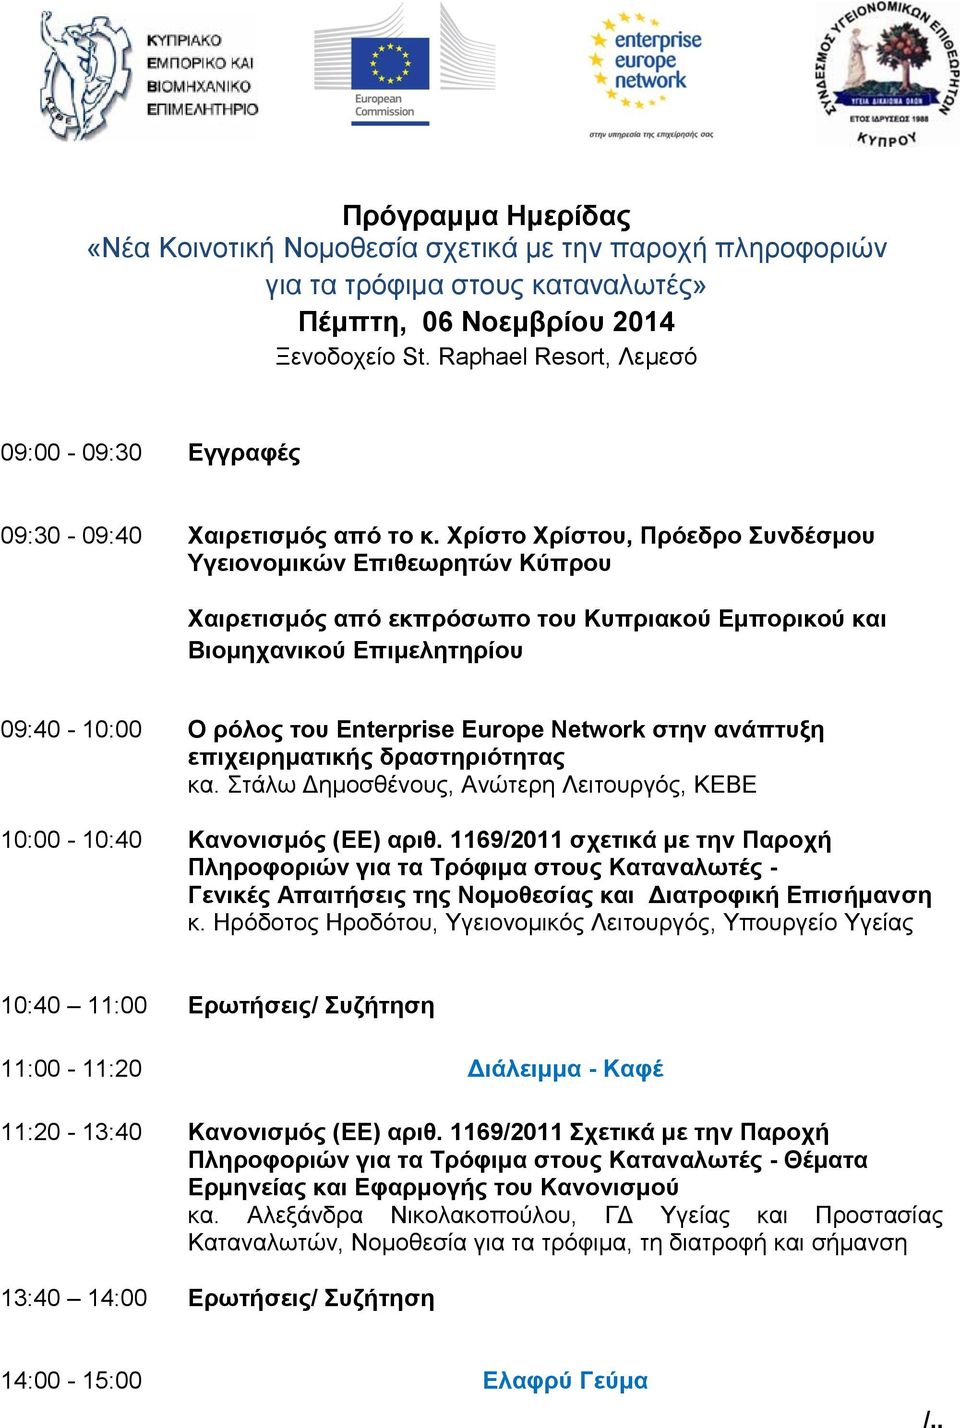 Χρίστο Χρίστου, Πρόεδρο Συνδέσμου Υγειονομικών Επιθεωρητών Κύπρου Χαιρετισμός από εκπρόσωπο του Κυπριακού Εμπορικού και Βιομηχανικού Επιμελητηρίου 09:40-10:00 Ο ρόλος του Enterprise Europe Network